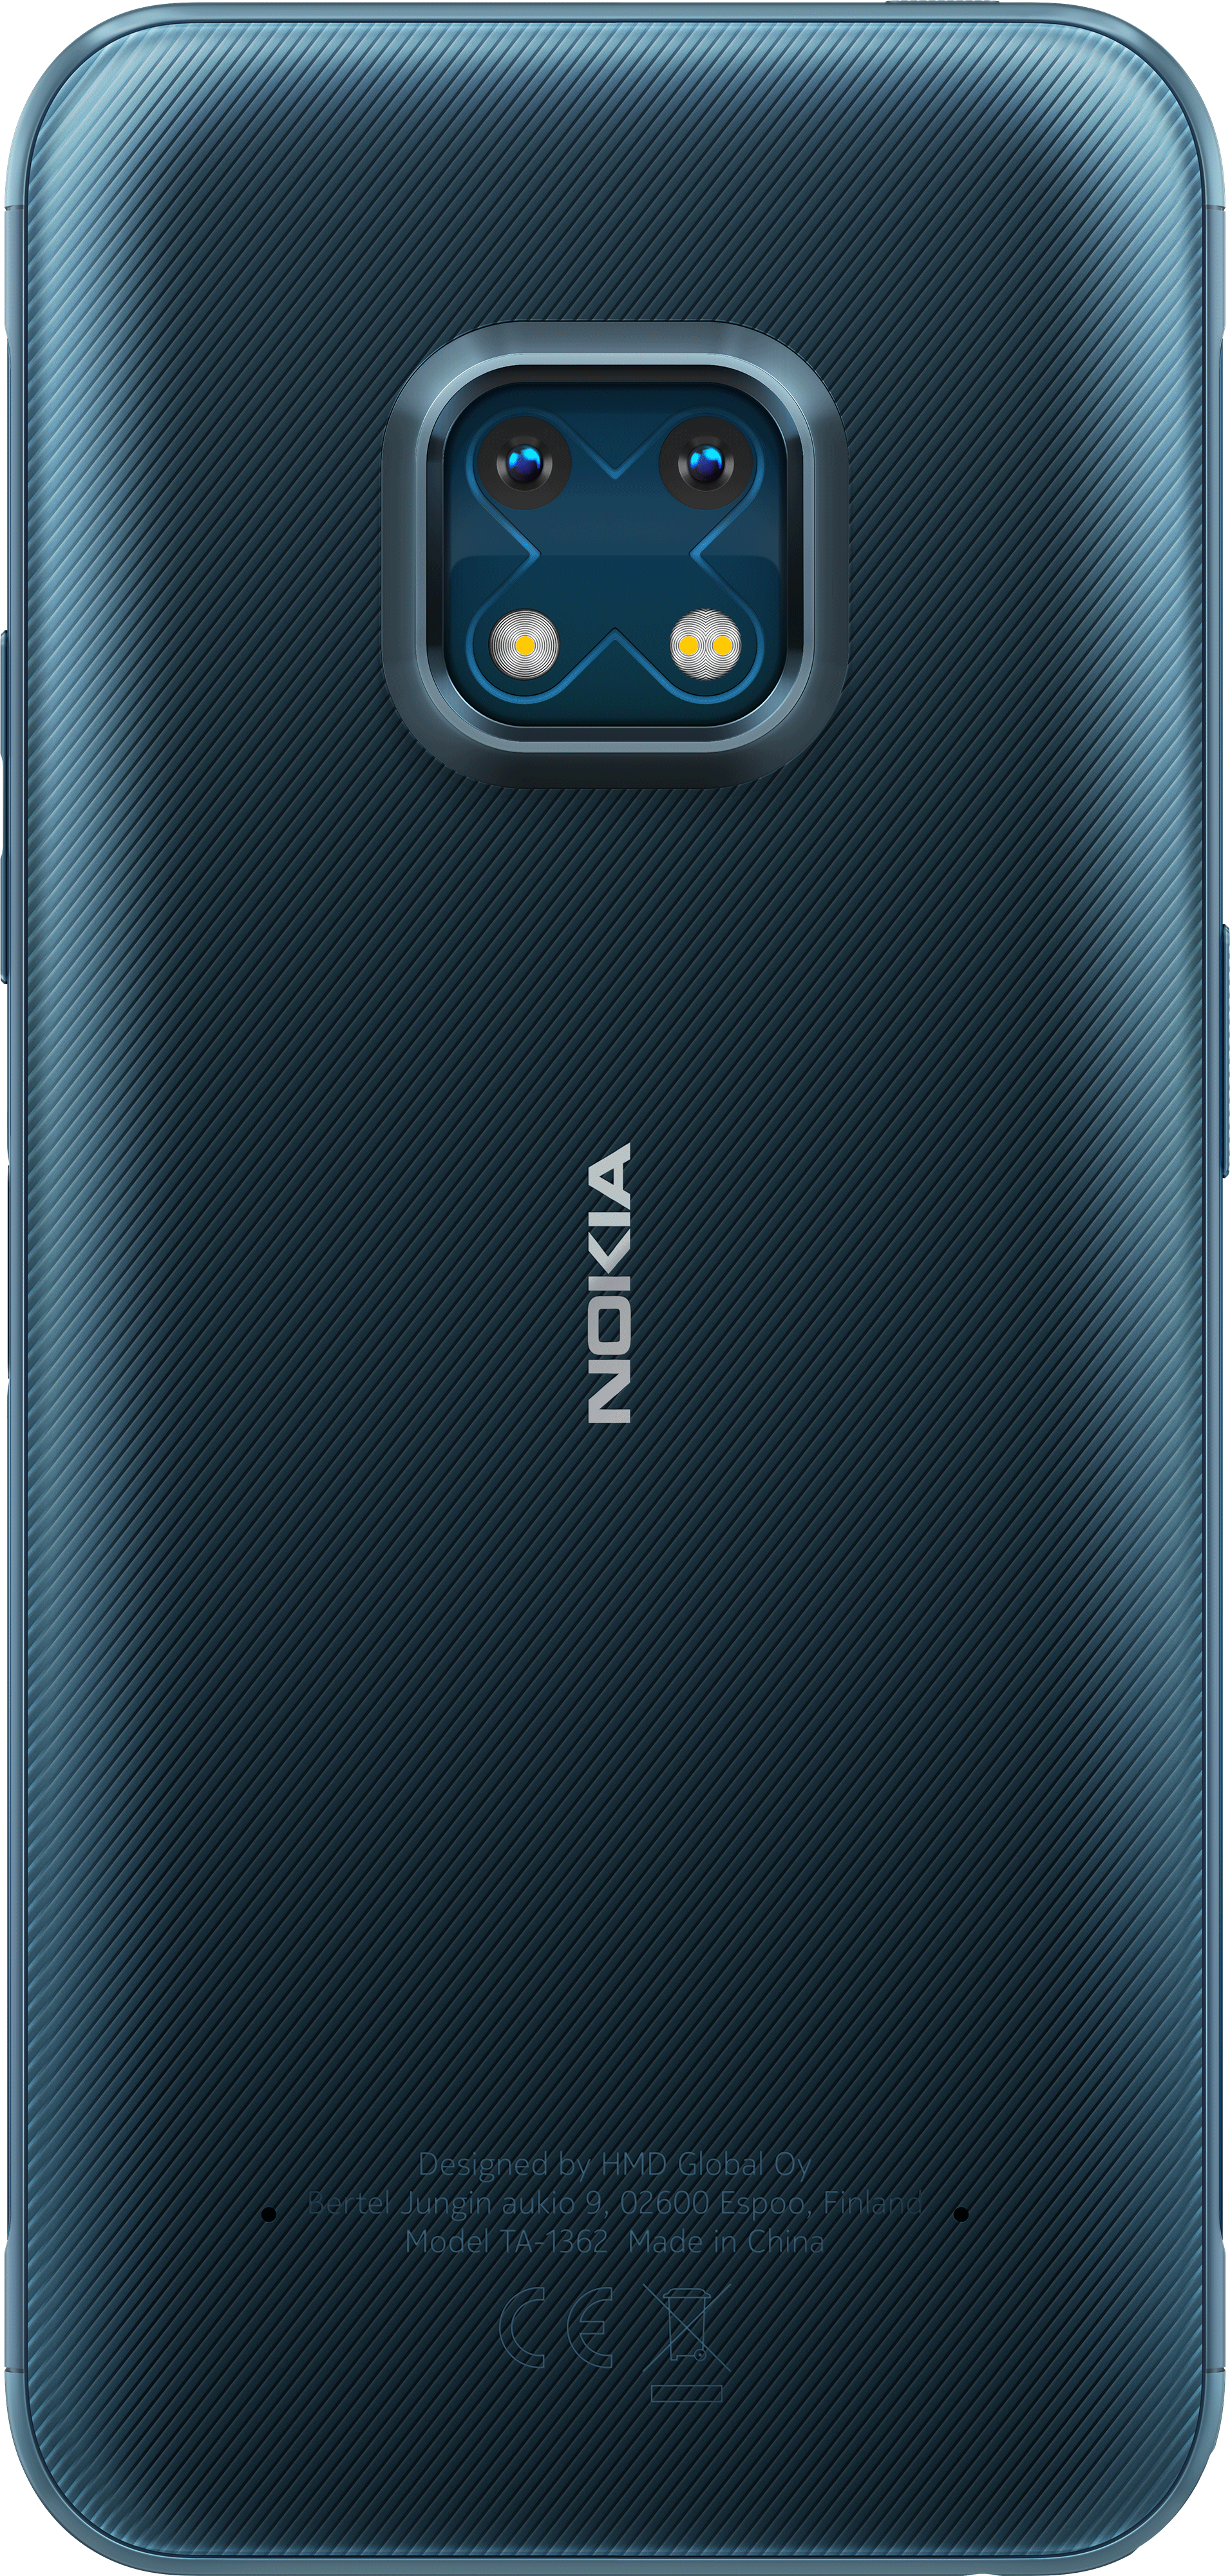 future nokia phones